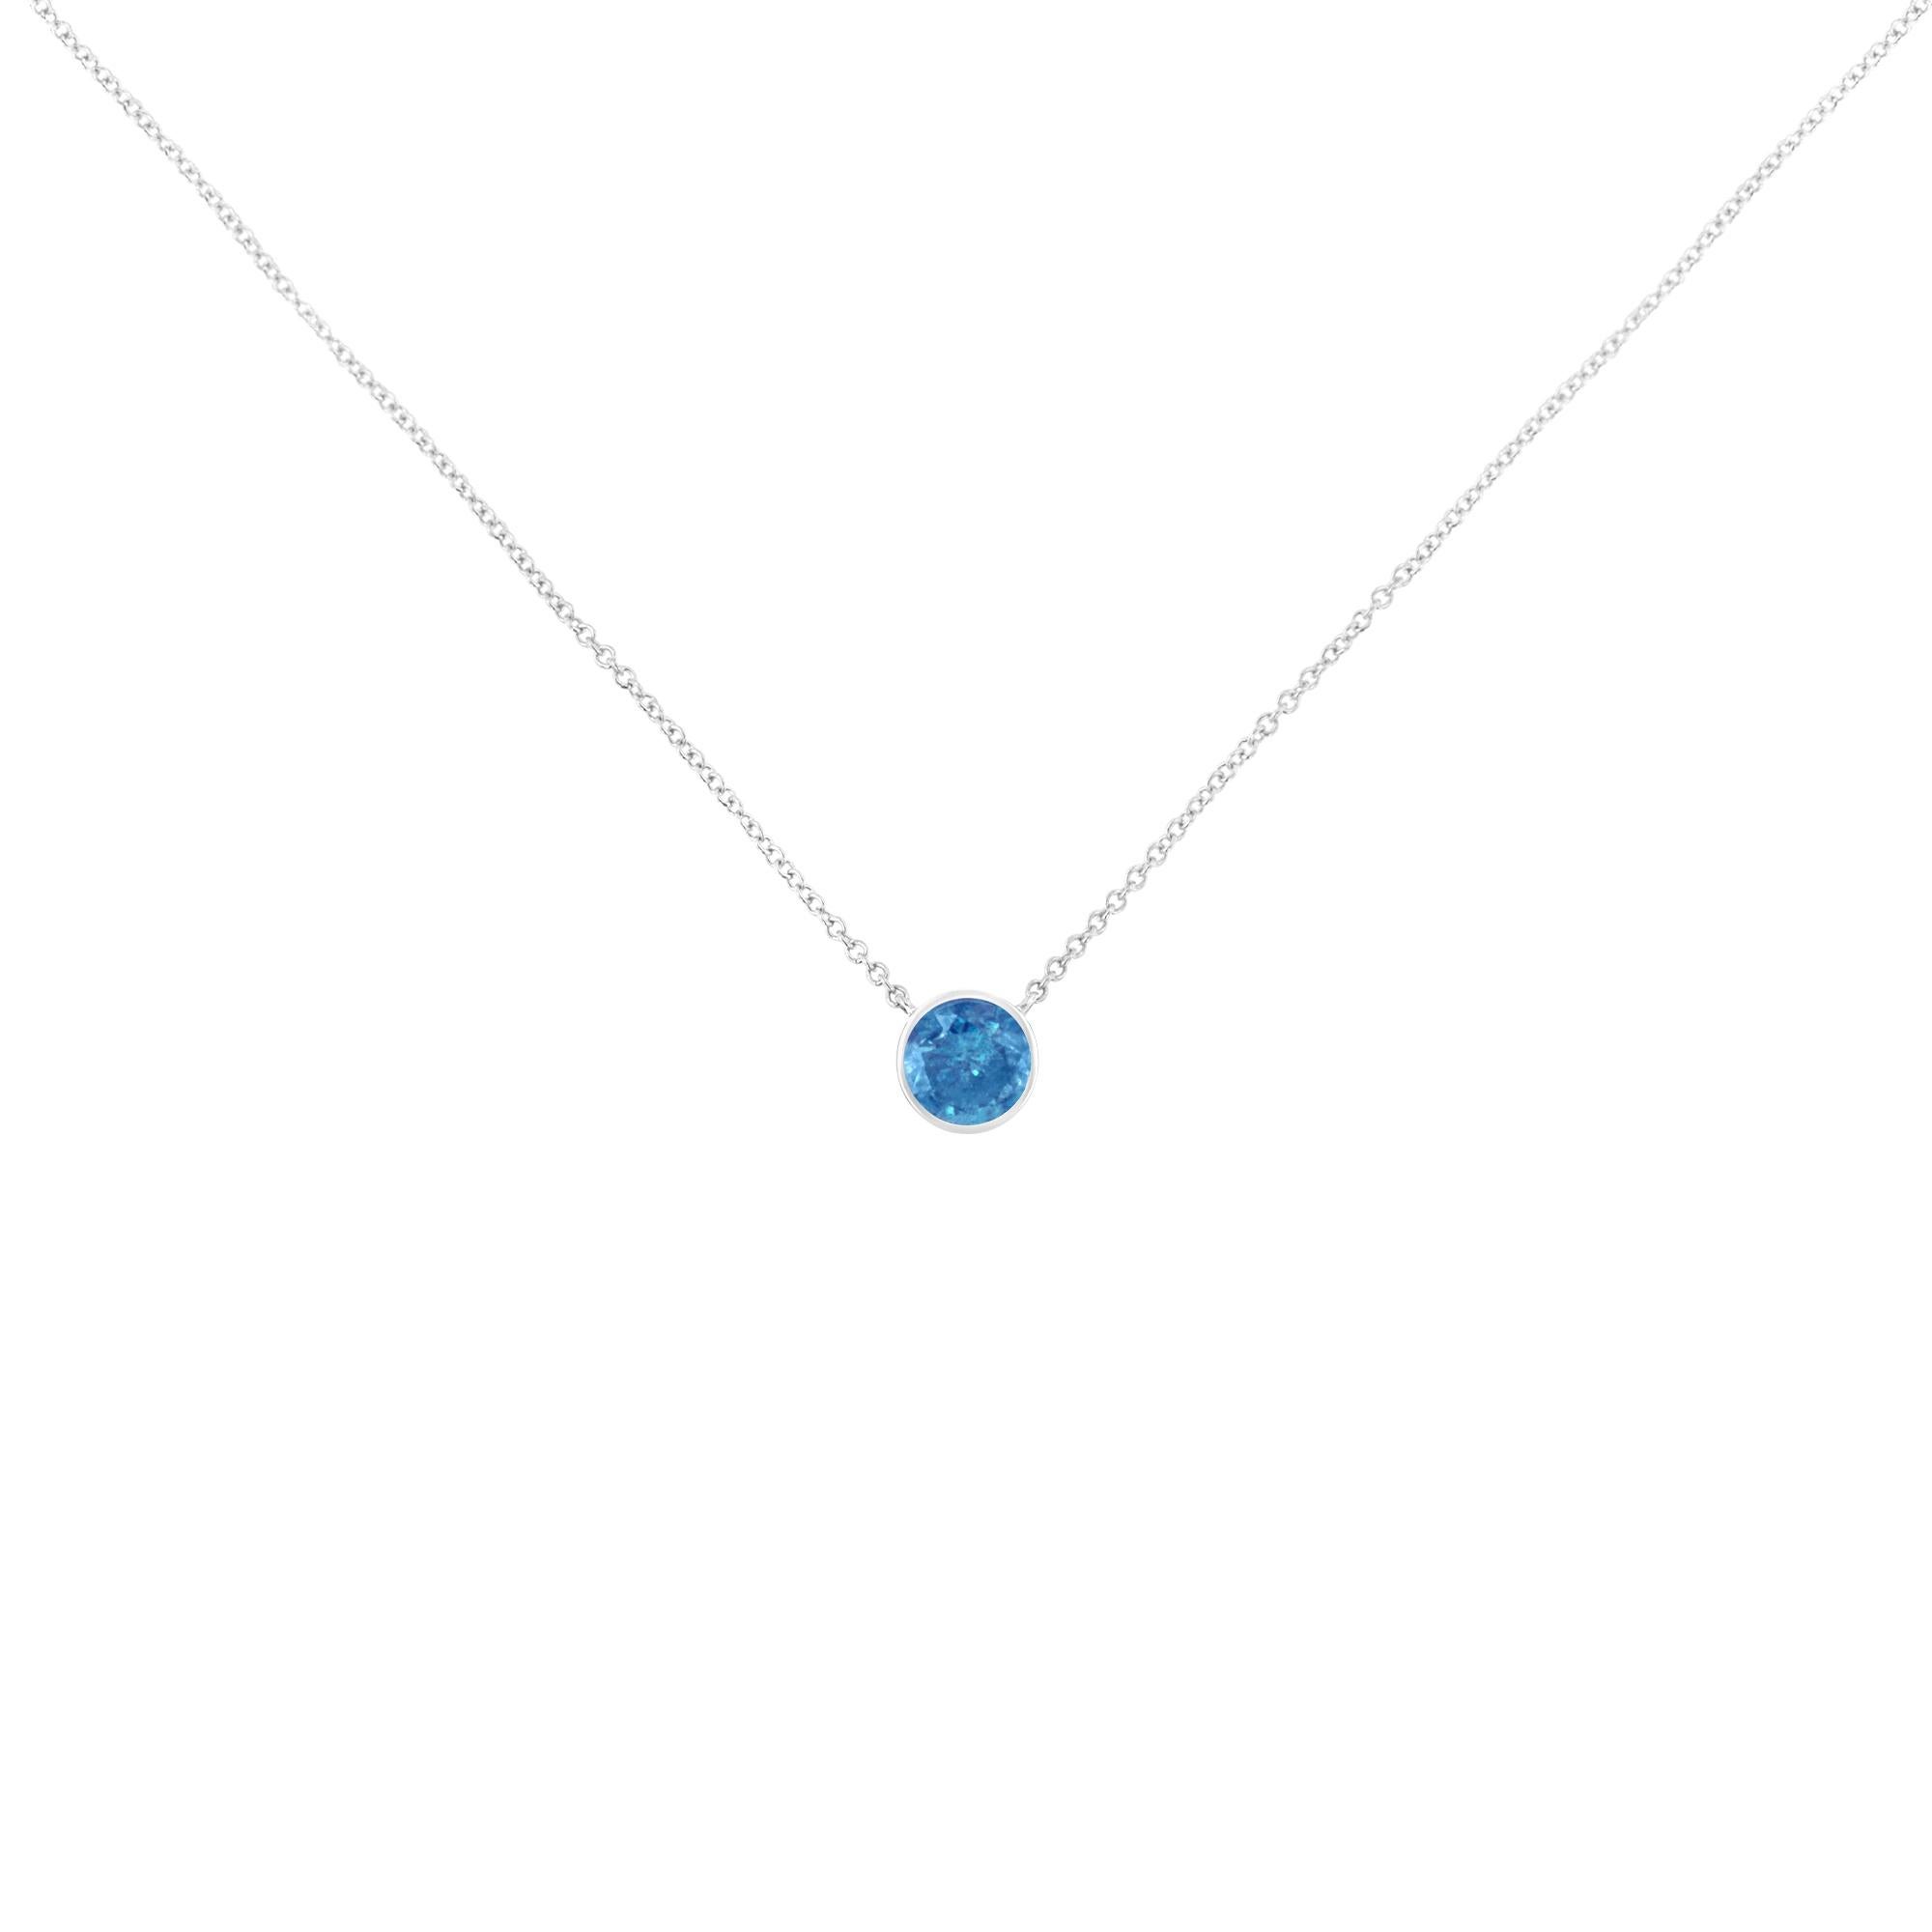 Certaines choses ne doivent pas être réinventées, c'est pourquoi nous avons créé le collier solitaire en diamant bleu. C'est le moyen idéal de souligner chaque grande occasion, chaque transition et chaque réussite personnelle dans votre vie. Ce